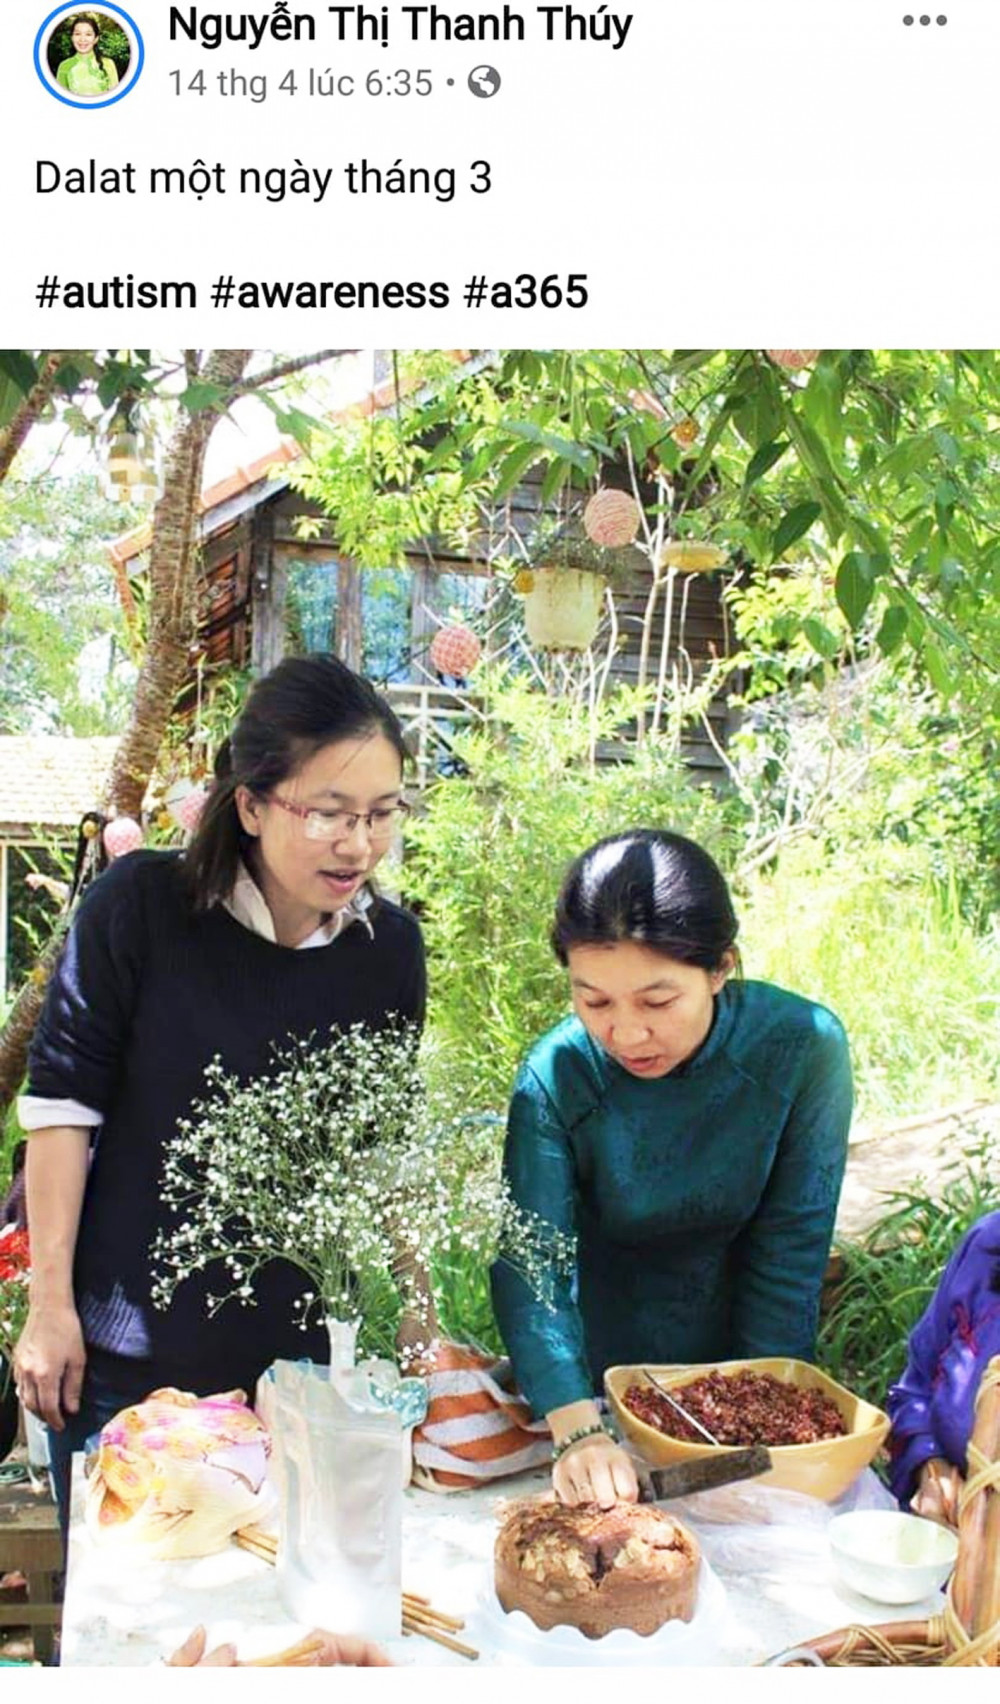 Chị Nguyễn Thị Thanh Thúy - Hội trưởng Hội quán Các bà mẹ (bên phải) đăng bức ảnh yêu thích cùng ba từ khóa ủng hộ người tự kỷ